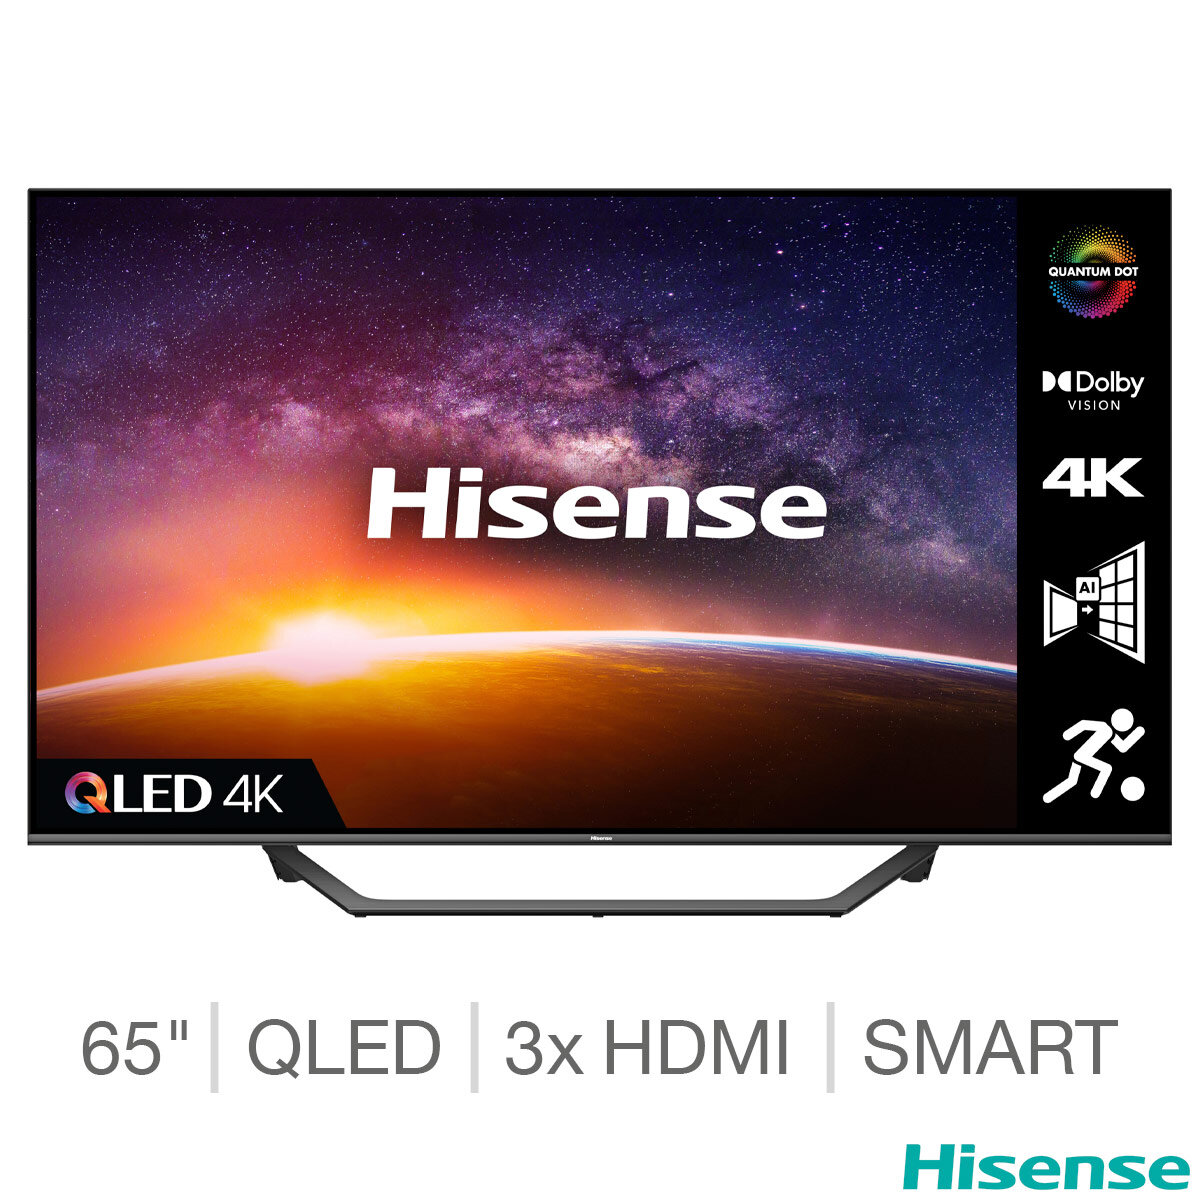 Buy Hisense 65A7GQTUK 65 Inch QLED 4K Ultra HD Smart TV at Costco.co.uk